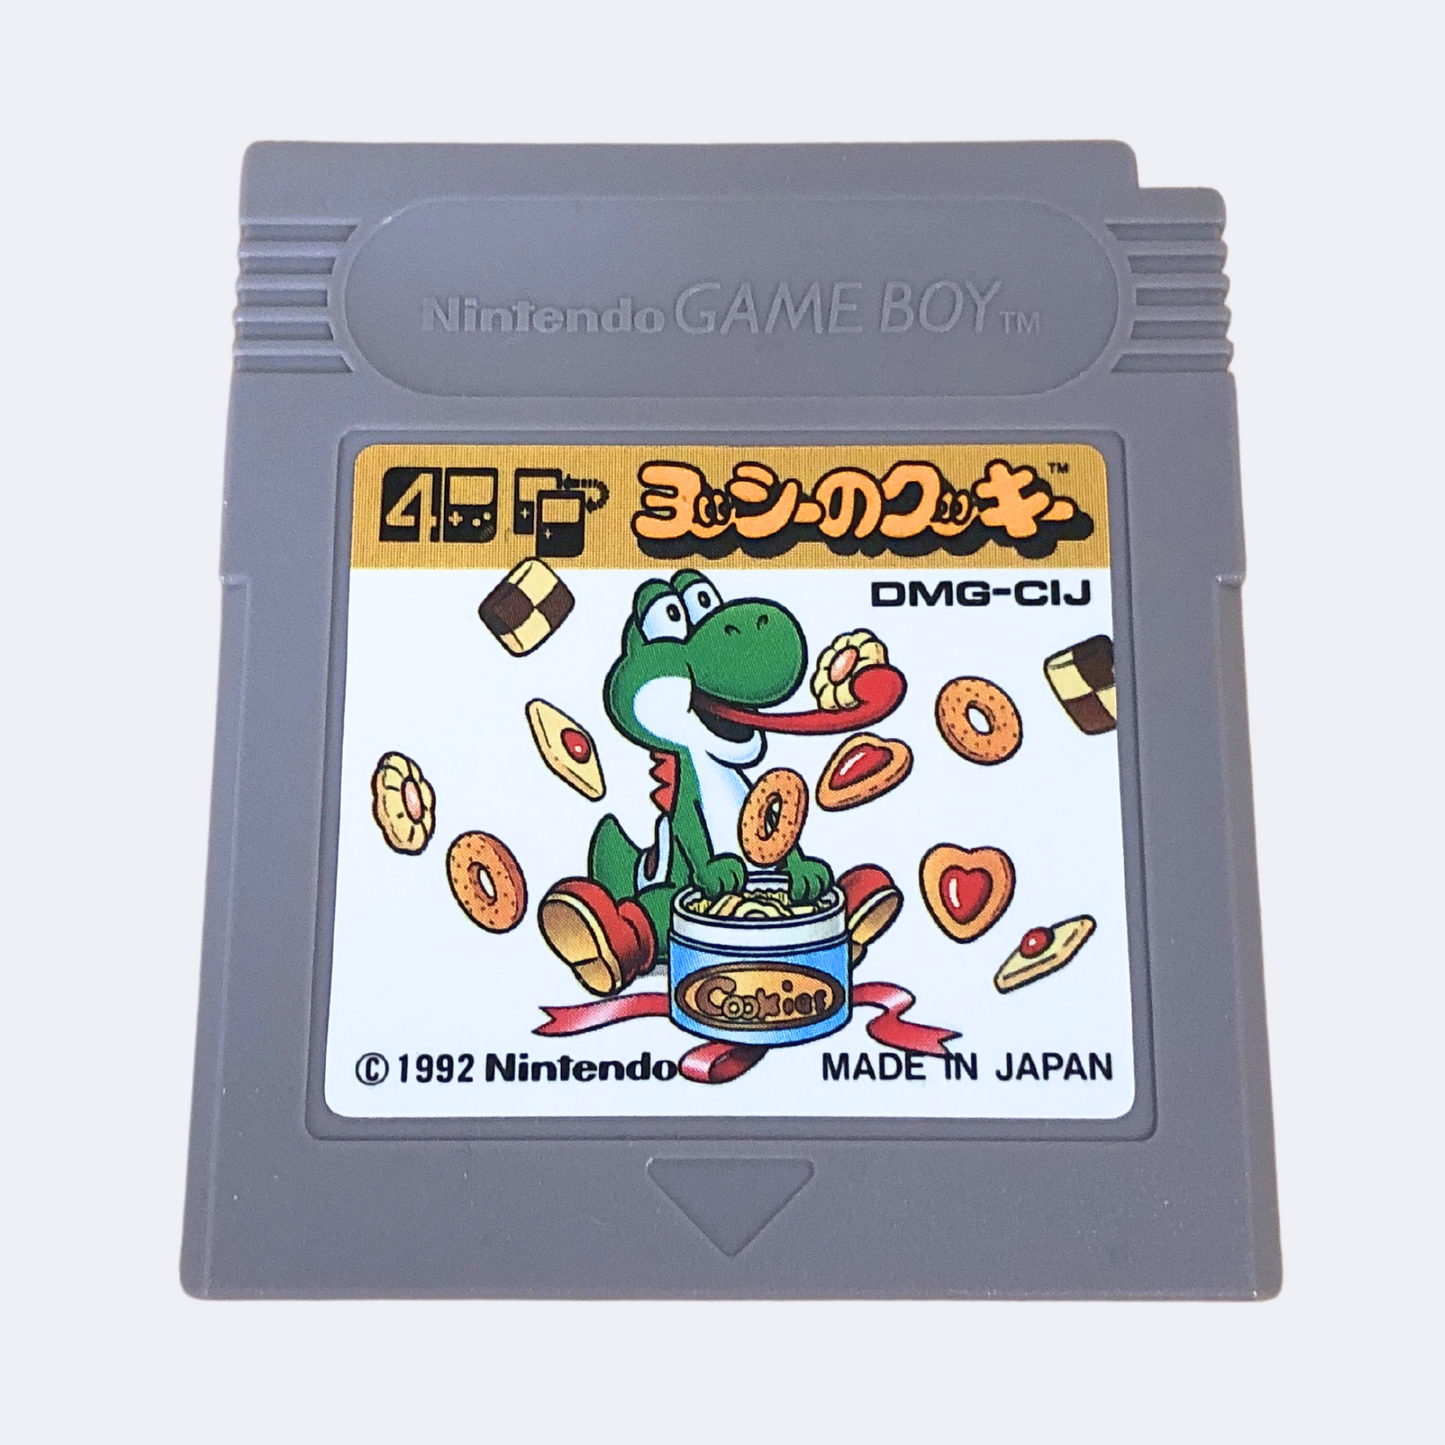 Yoshi’s Cookie - Gameboy Game